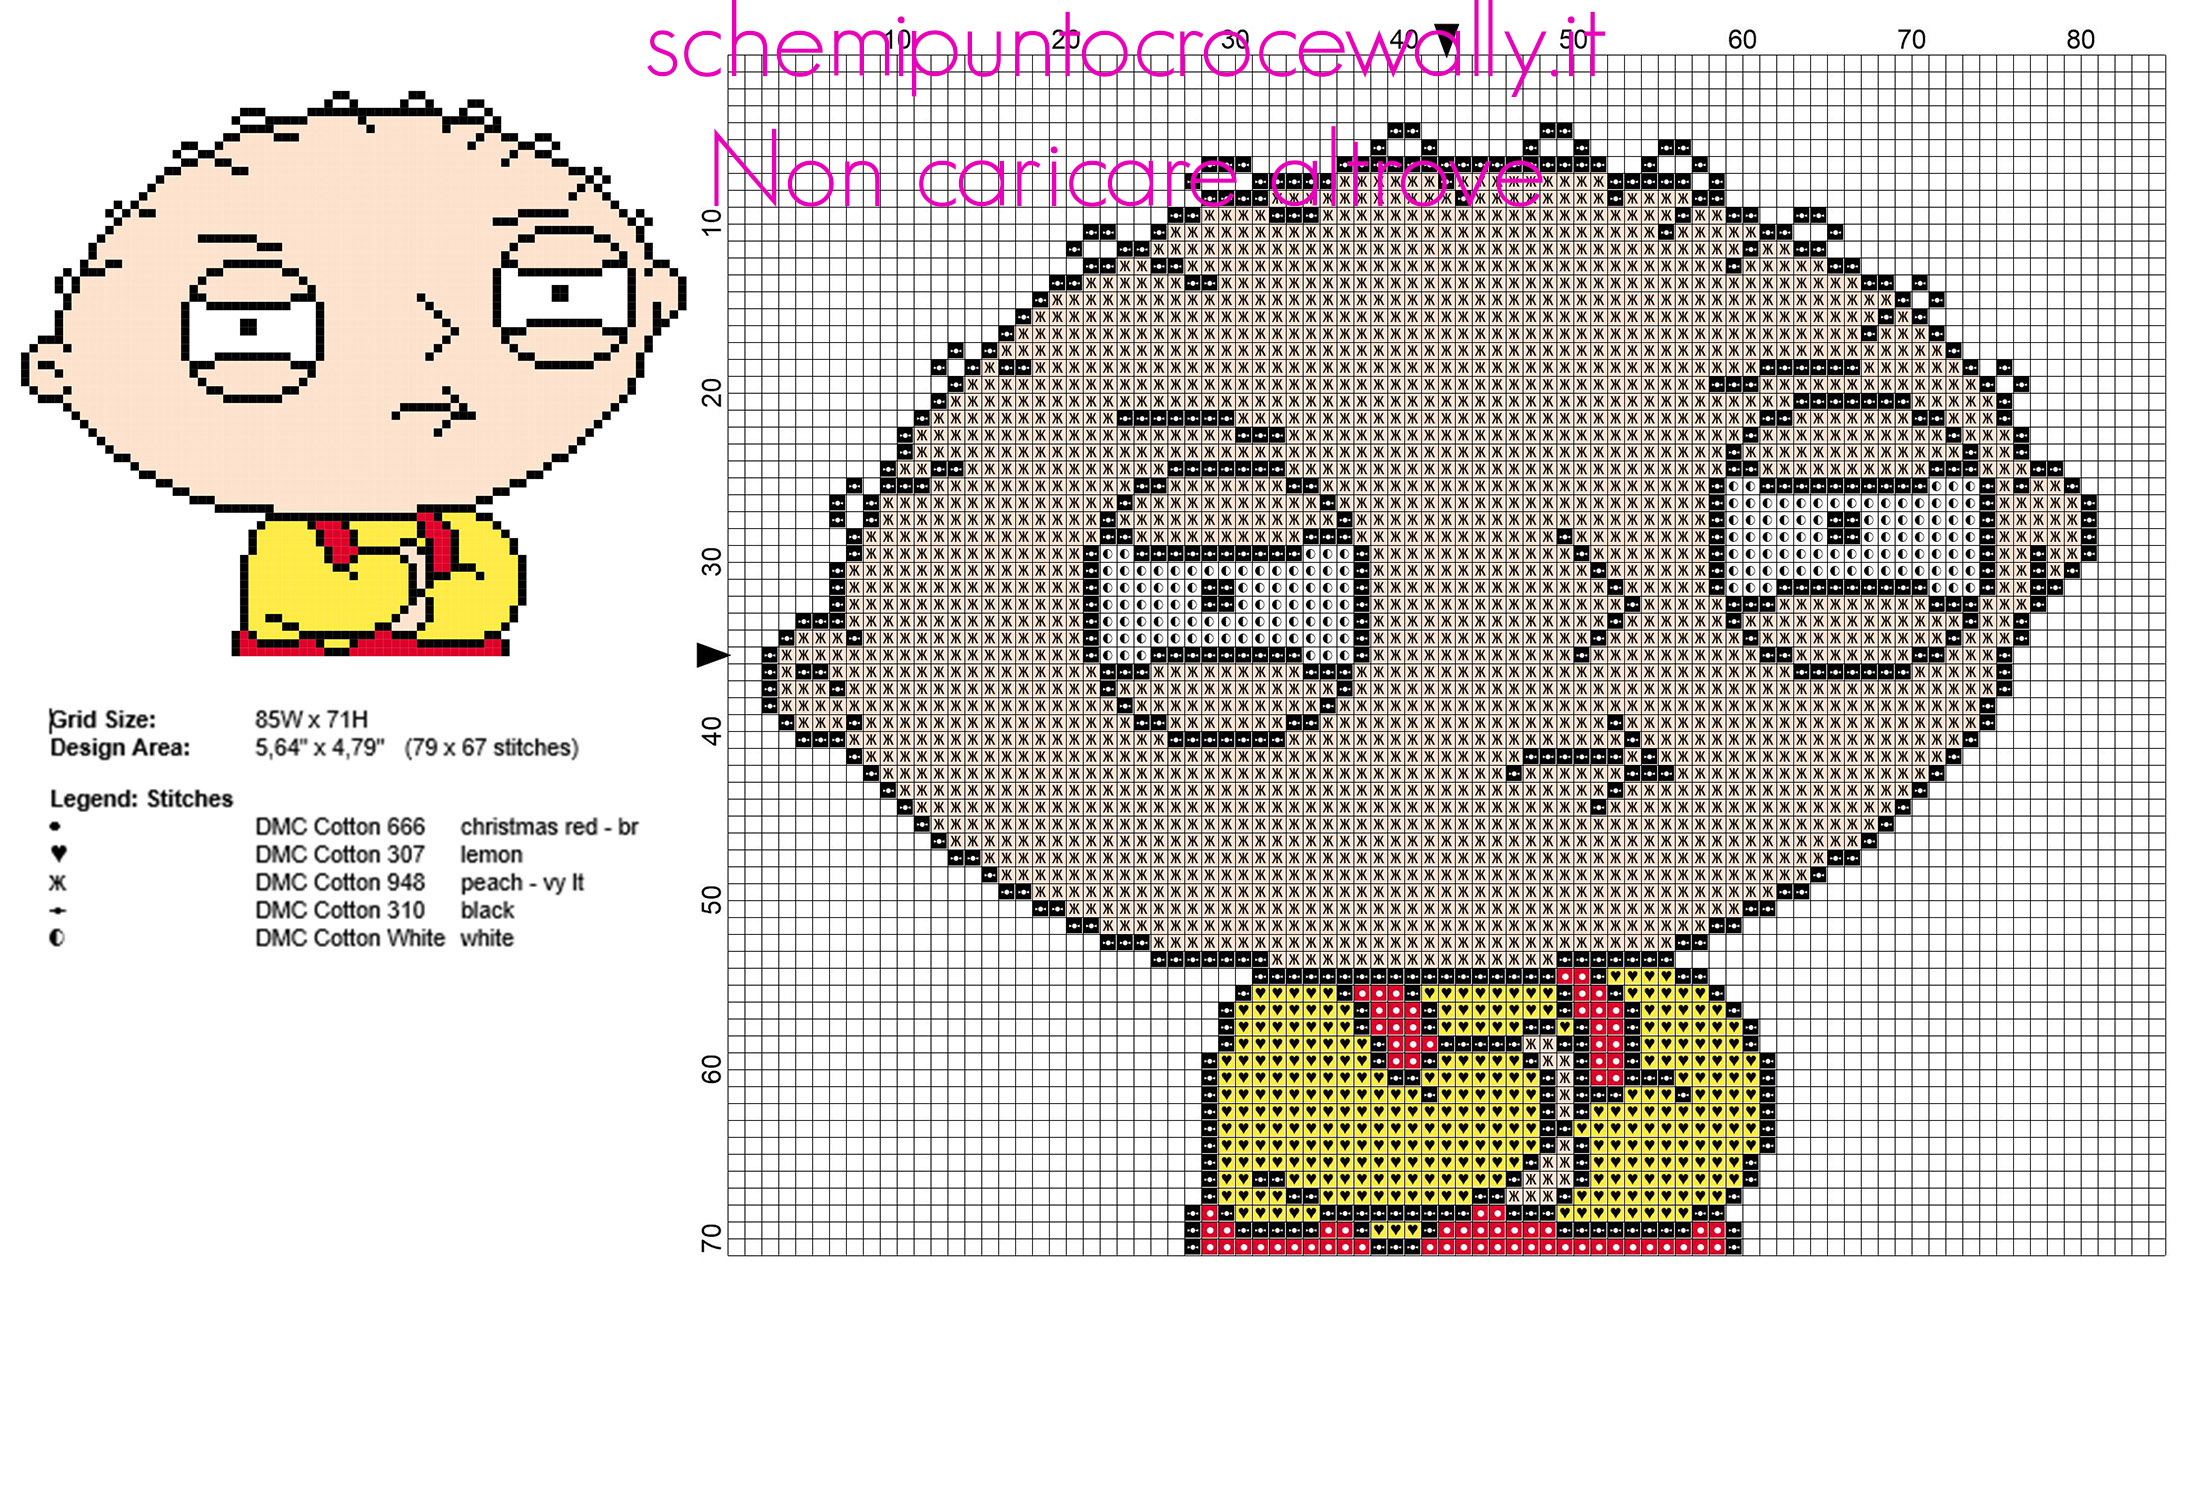 Il bambino Stewie dal cartone animato I Griffin schema punto croce gratis